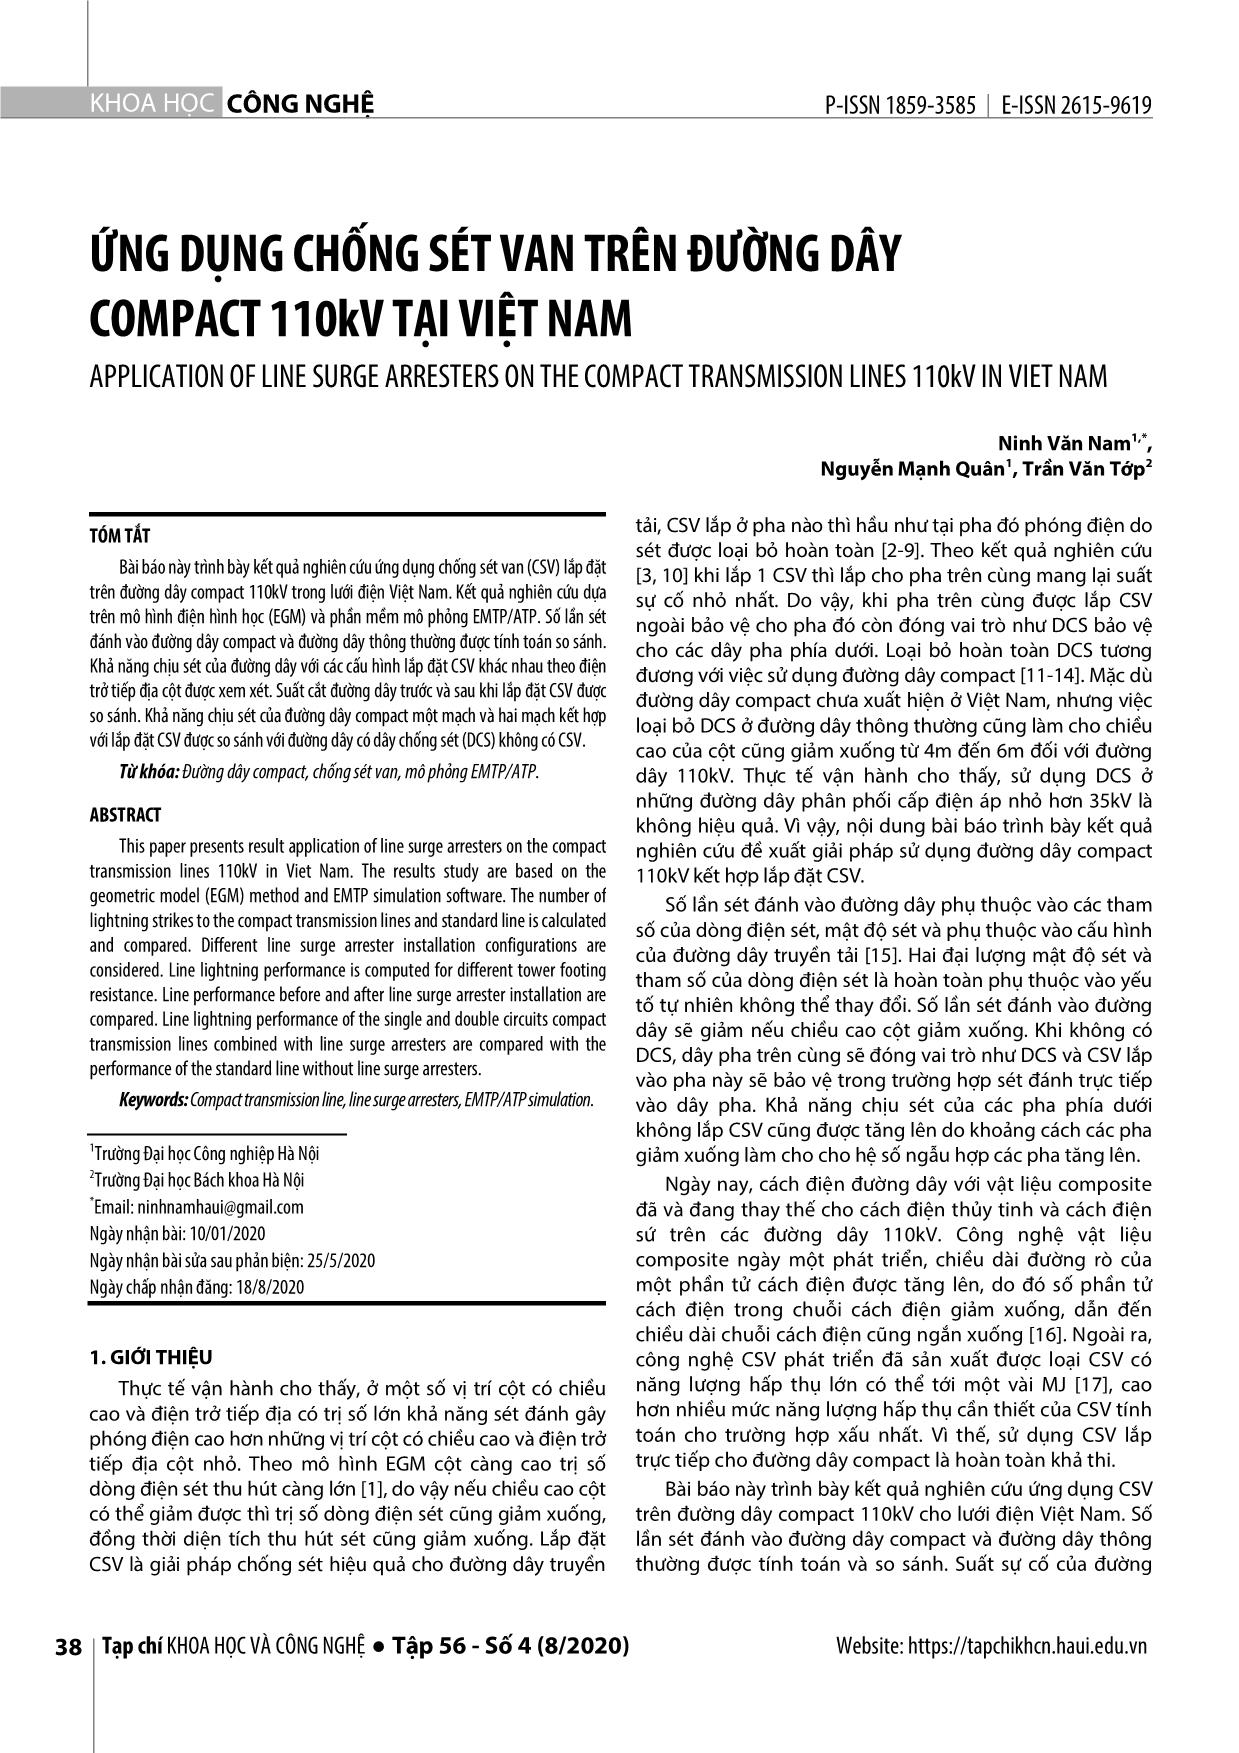 Ứng dụng chống sét van trên đường dây compact 110Kv tại Việt Nam trang 1